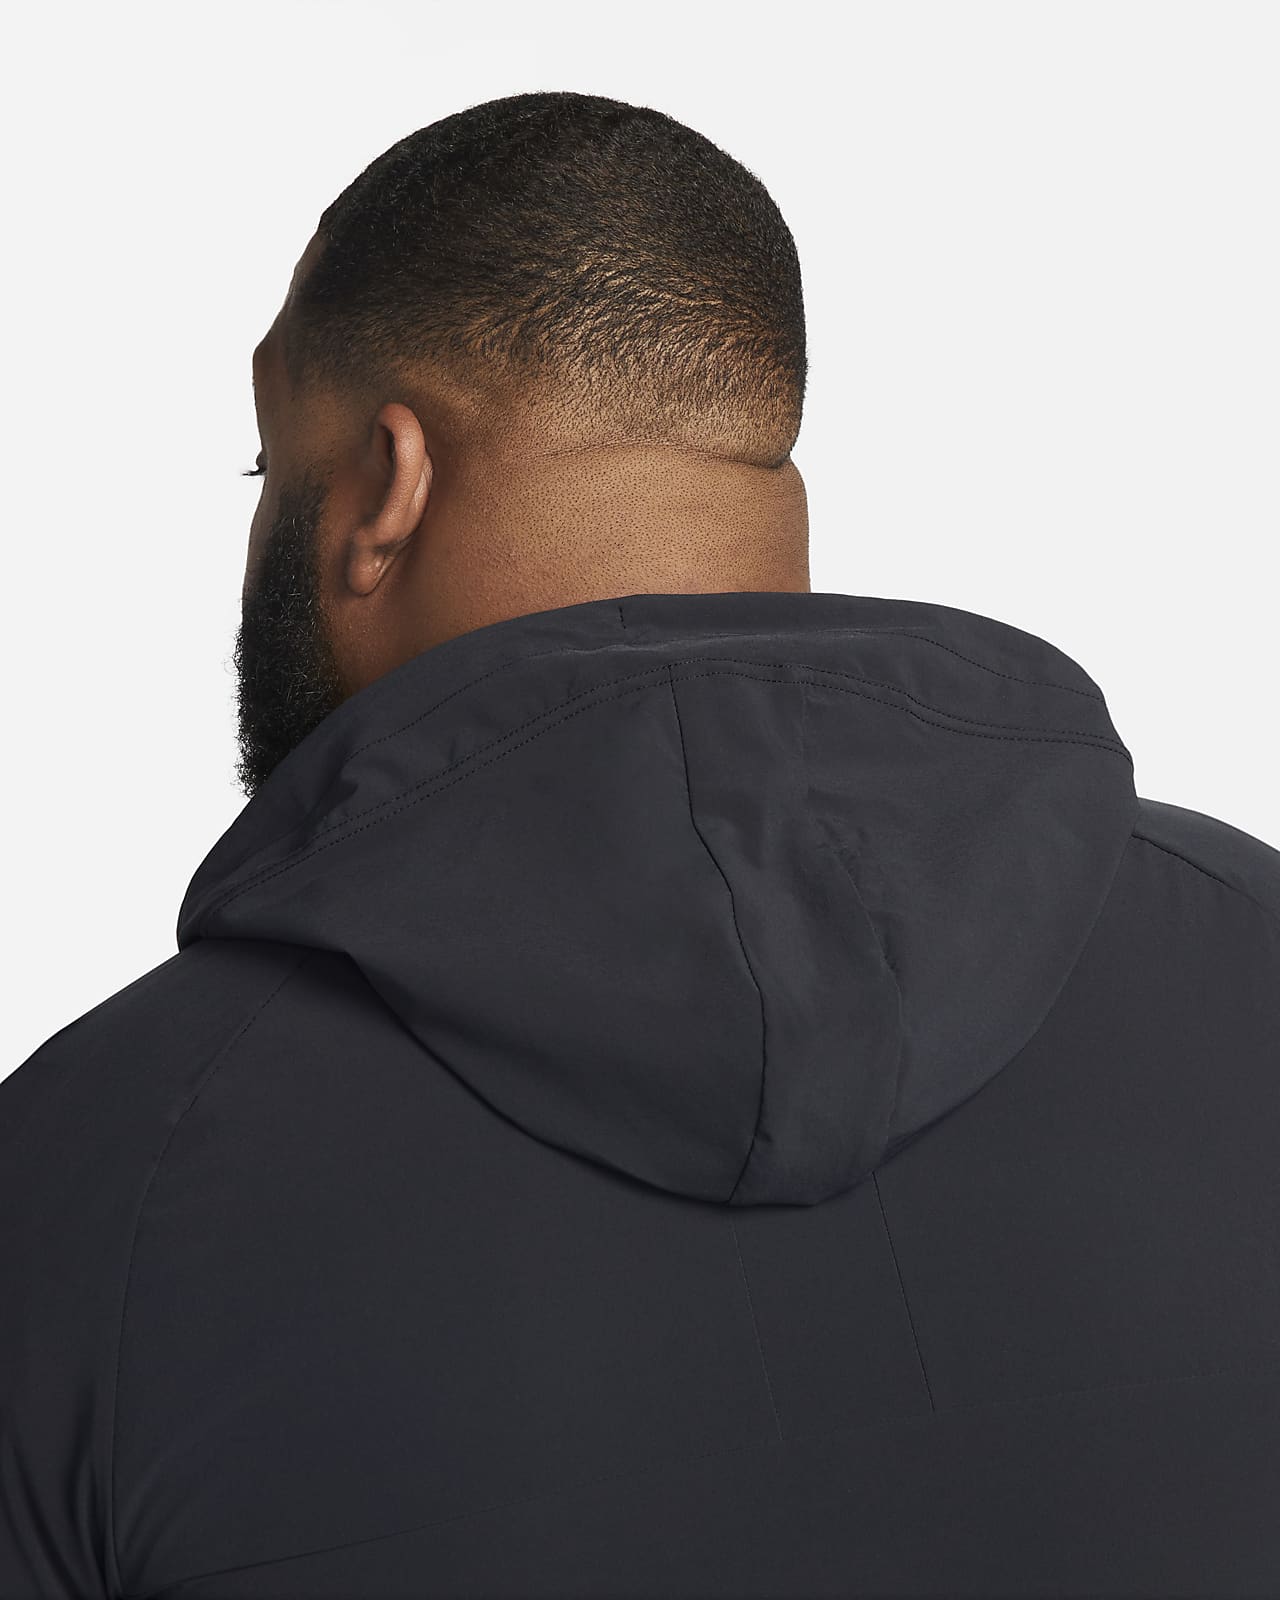 Nike Shield Zoned Hoodie Jacket Black